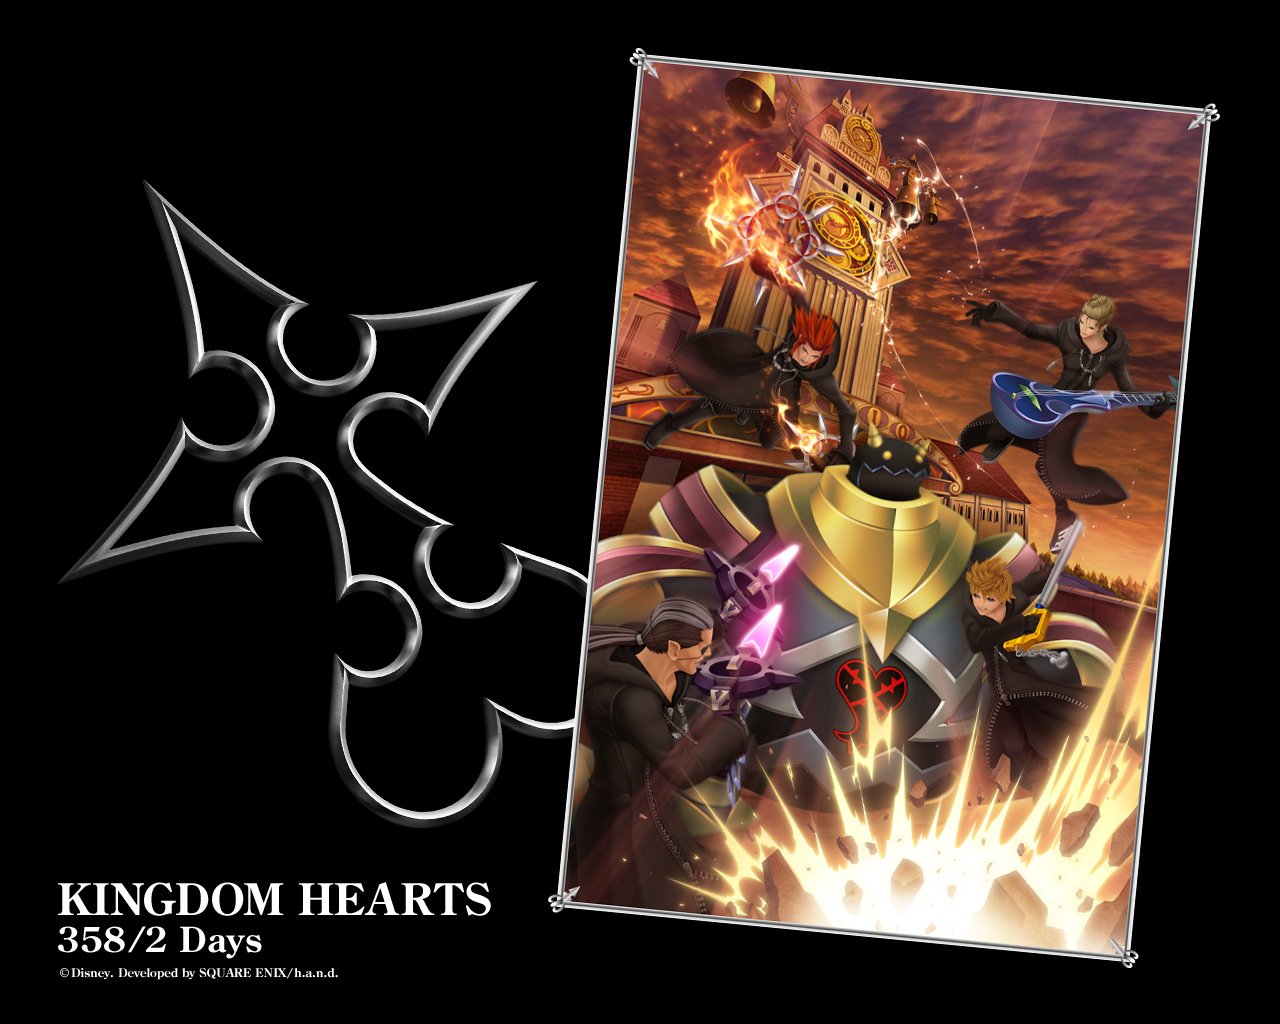 Fond ecran wallpaper Kingdom Hearts 358 2 Days   JeuxVideofr